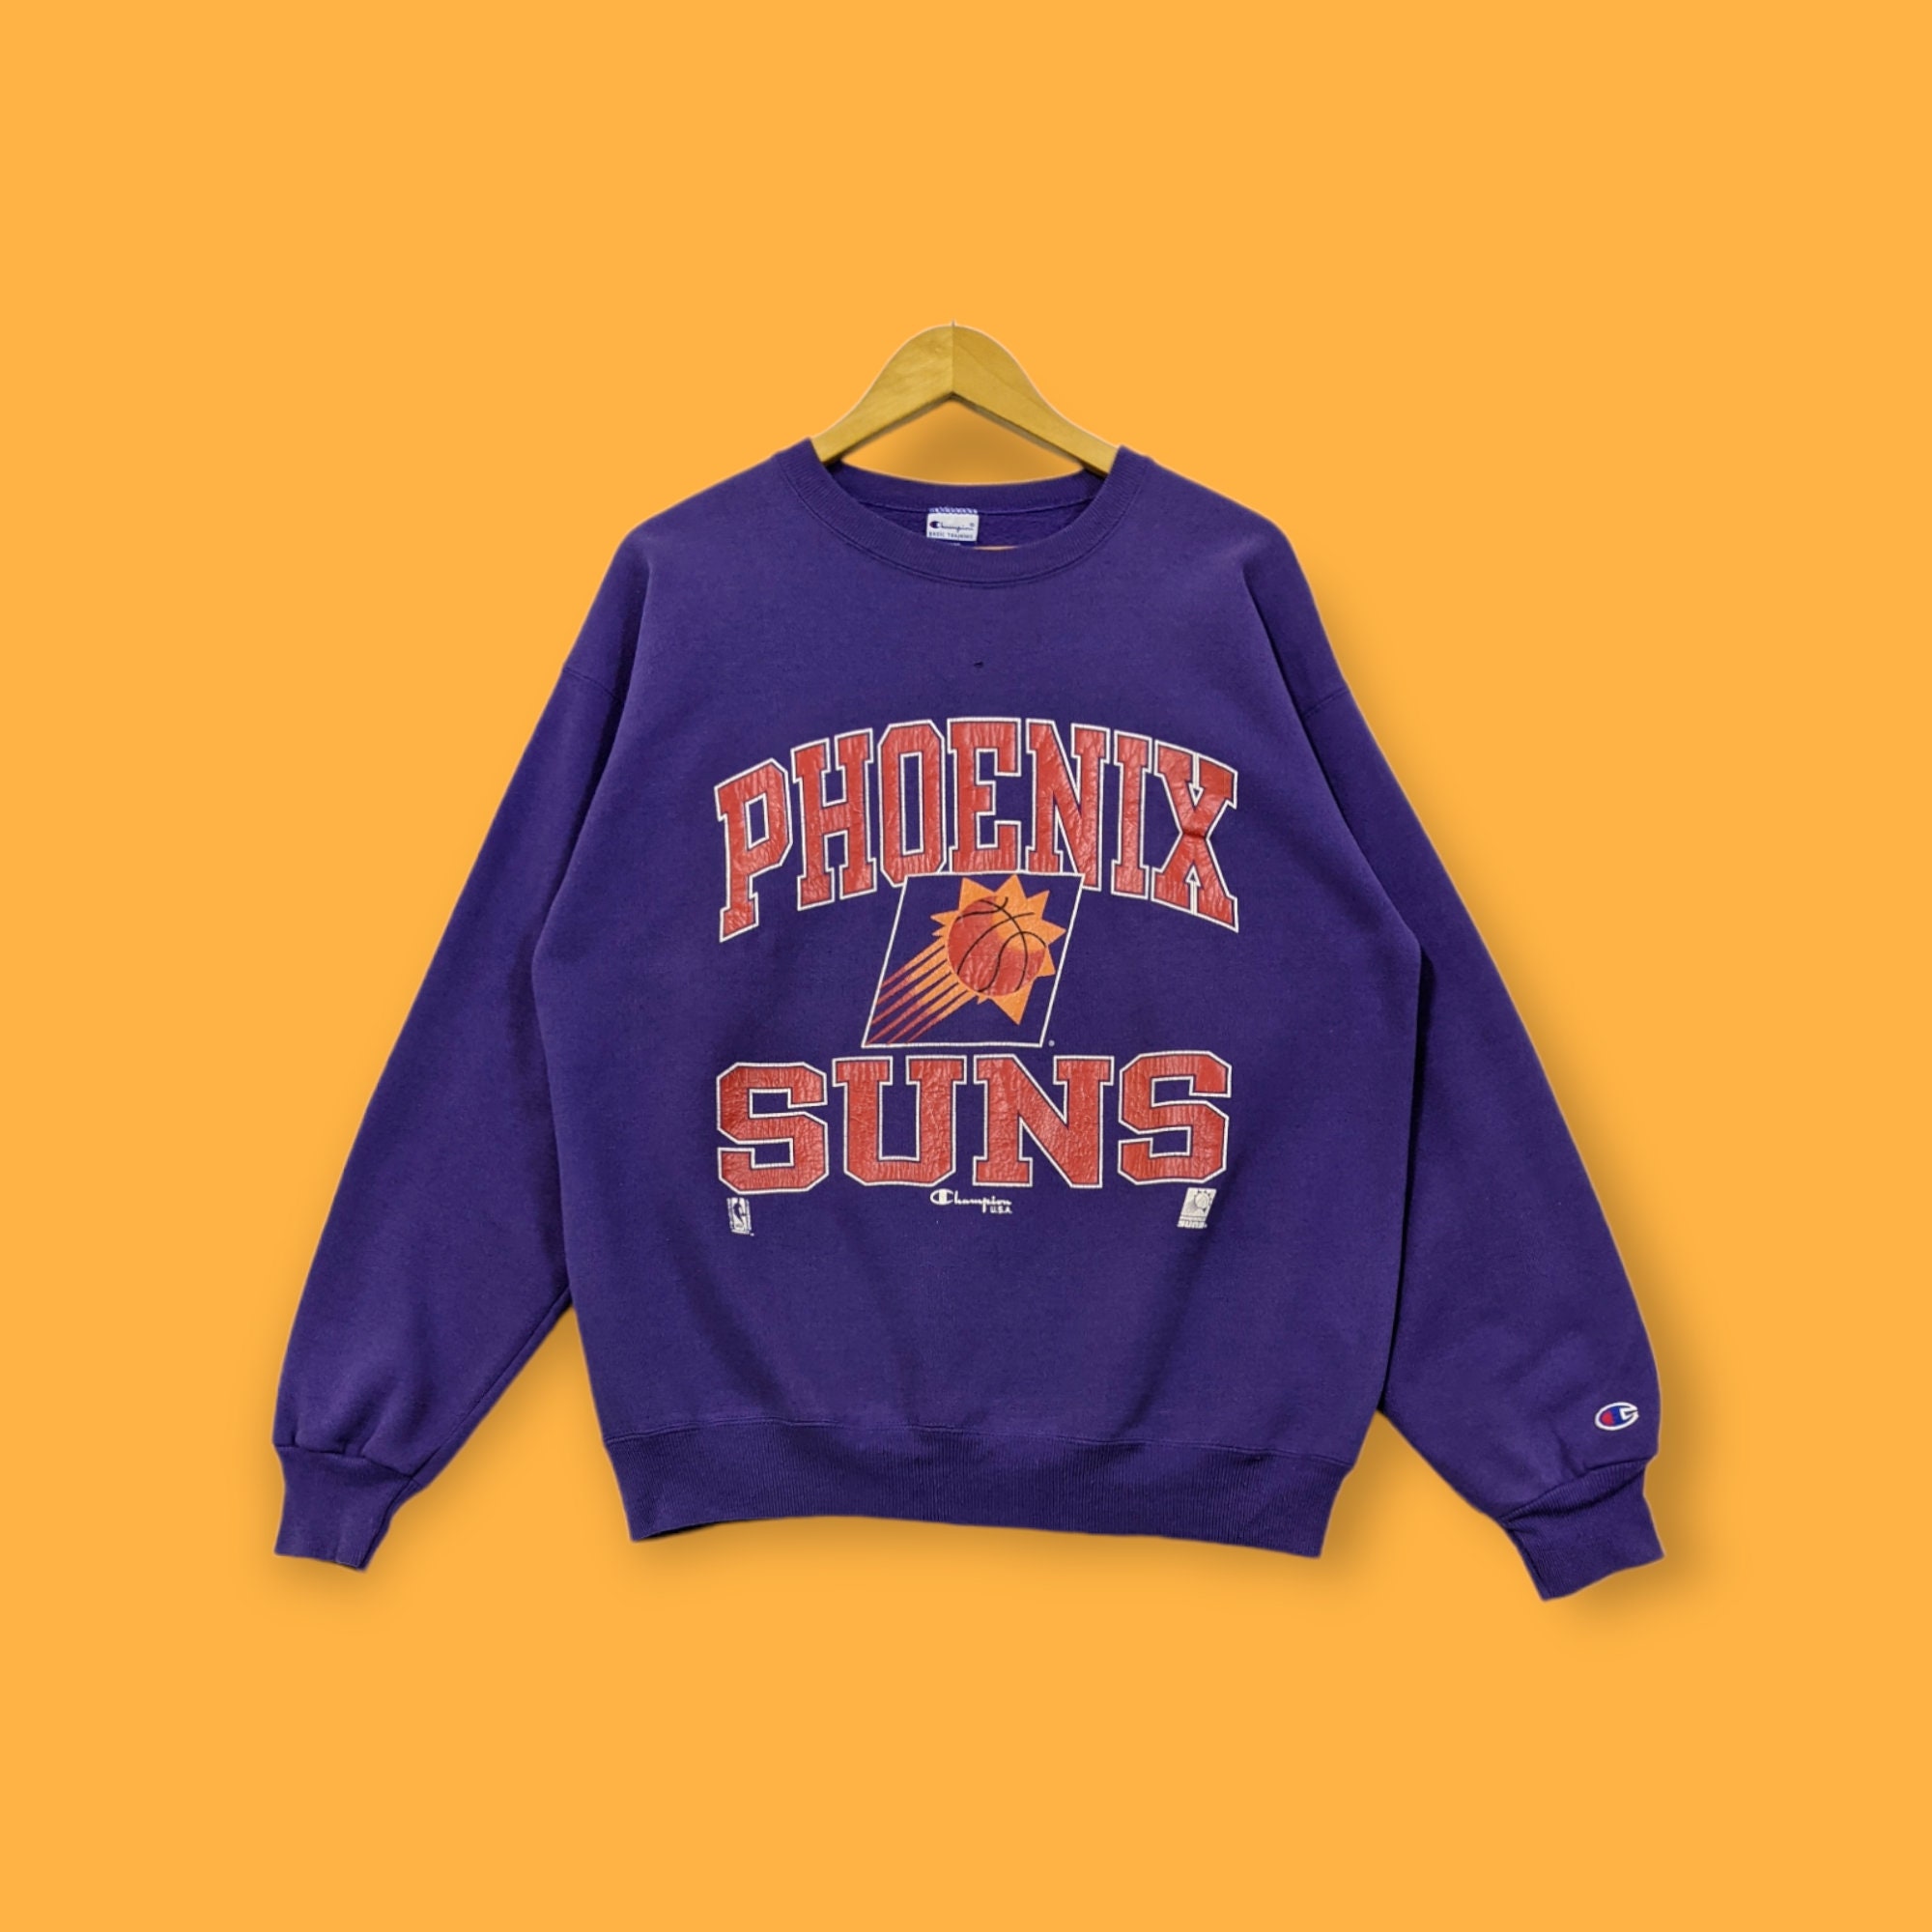 Old Vintage Digital Phoenix Suns Basketball Unisex Sweatshirt